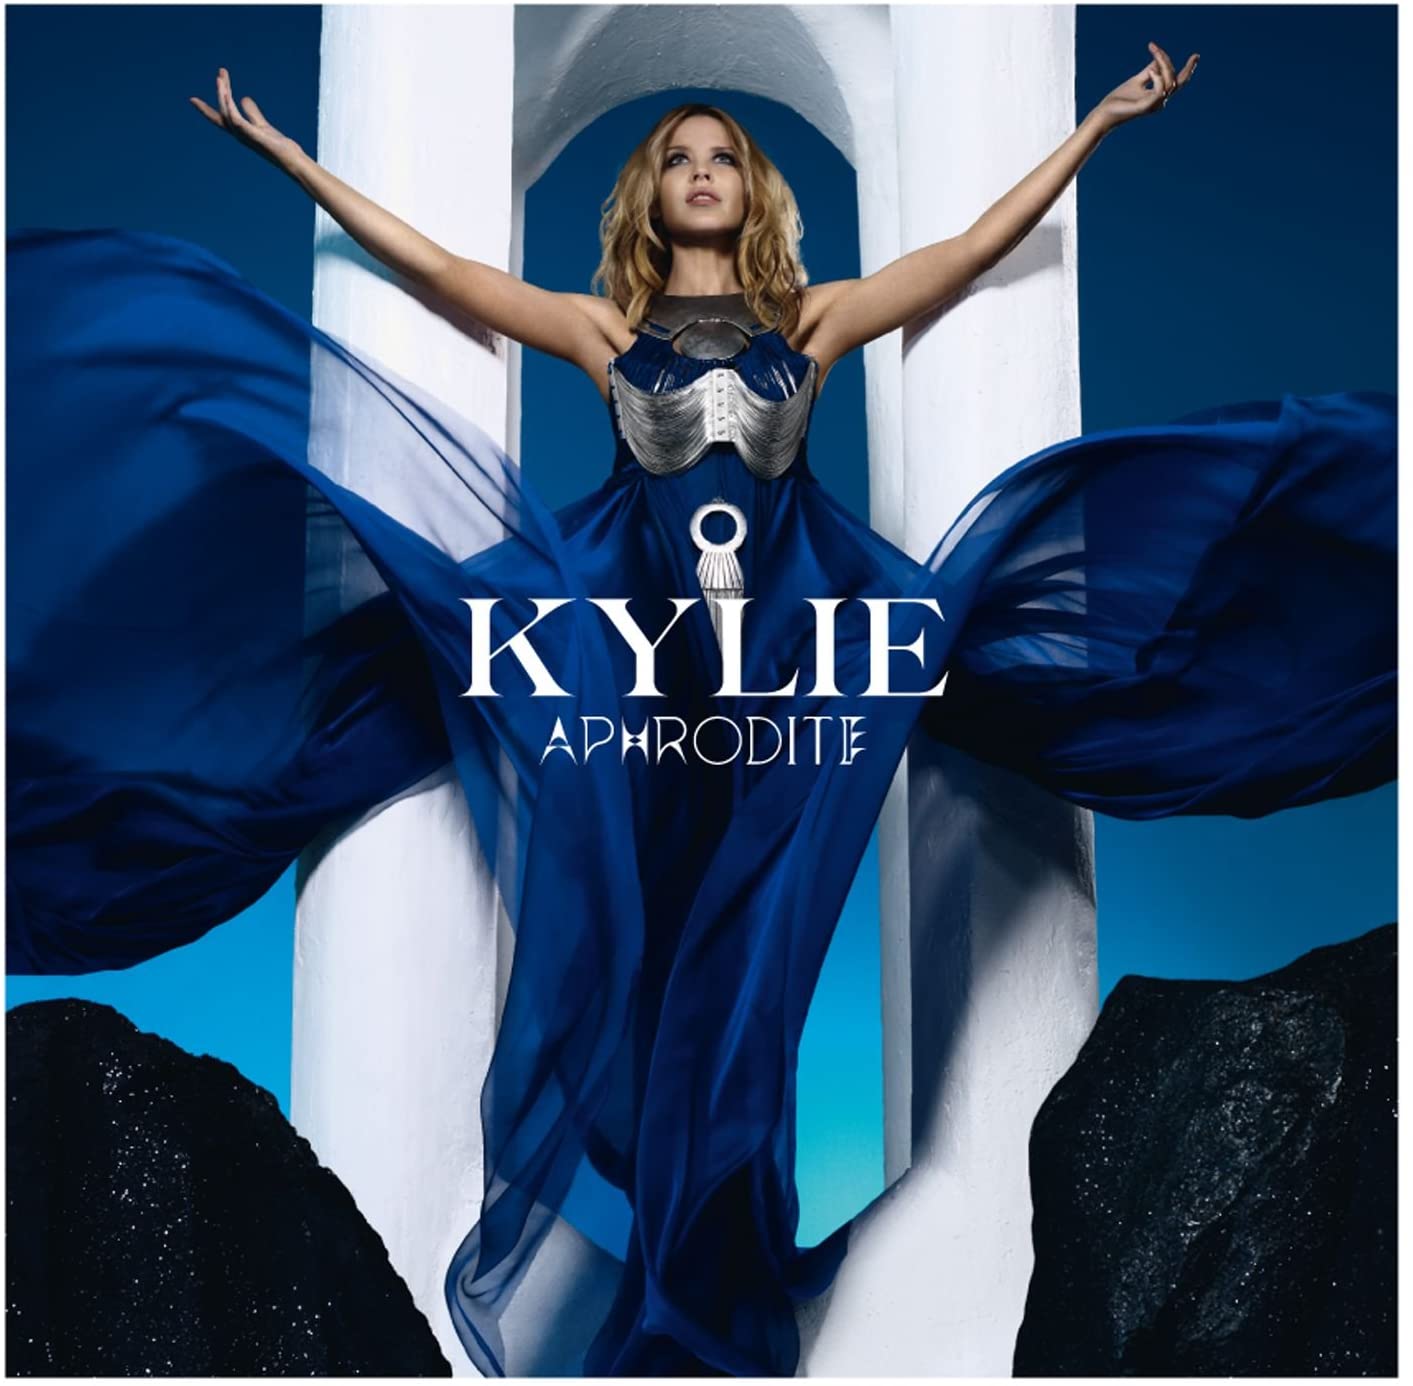 The album artwork for Aphrodite by Kylie Minogue. 